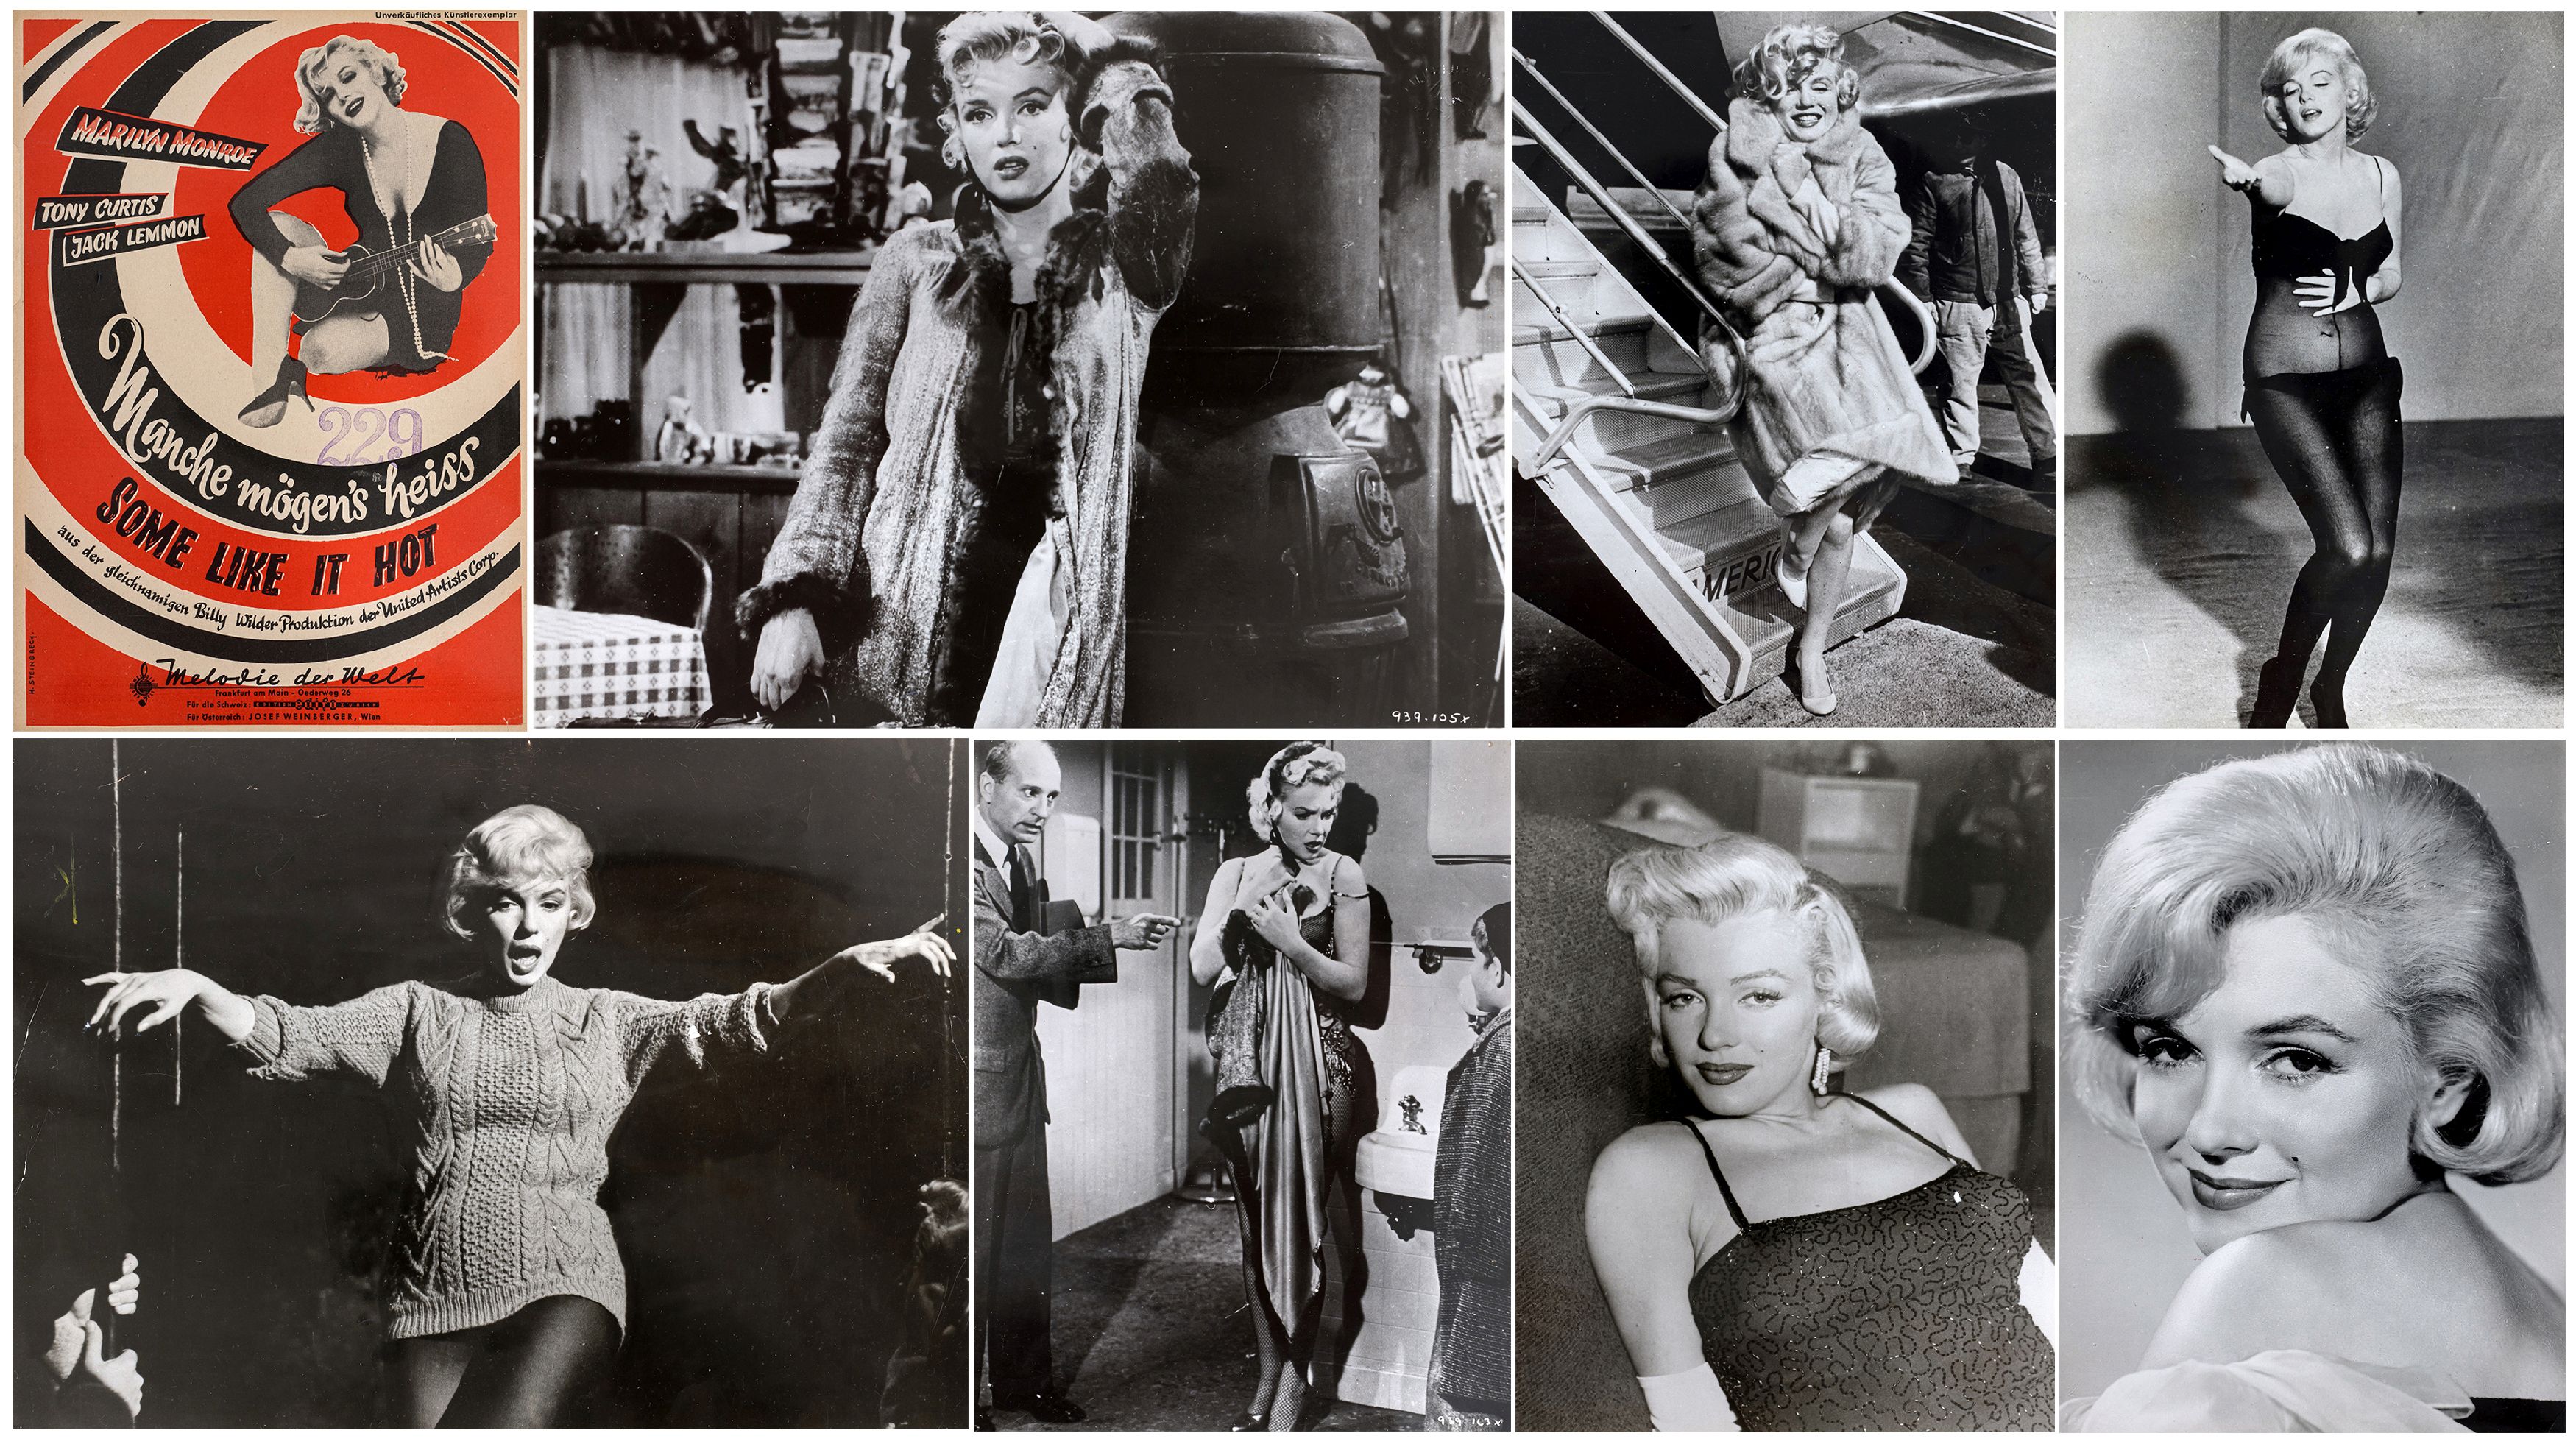 FOTOGRAFIE | 7 Pressefotos von Marilyn Monroe und 1 Notenblatt "Some Like It Hot"